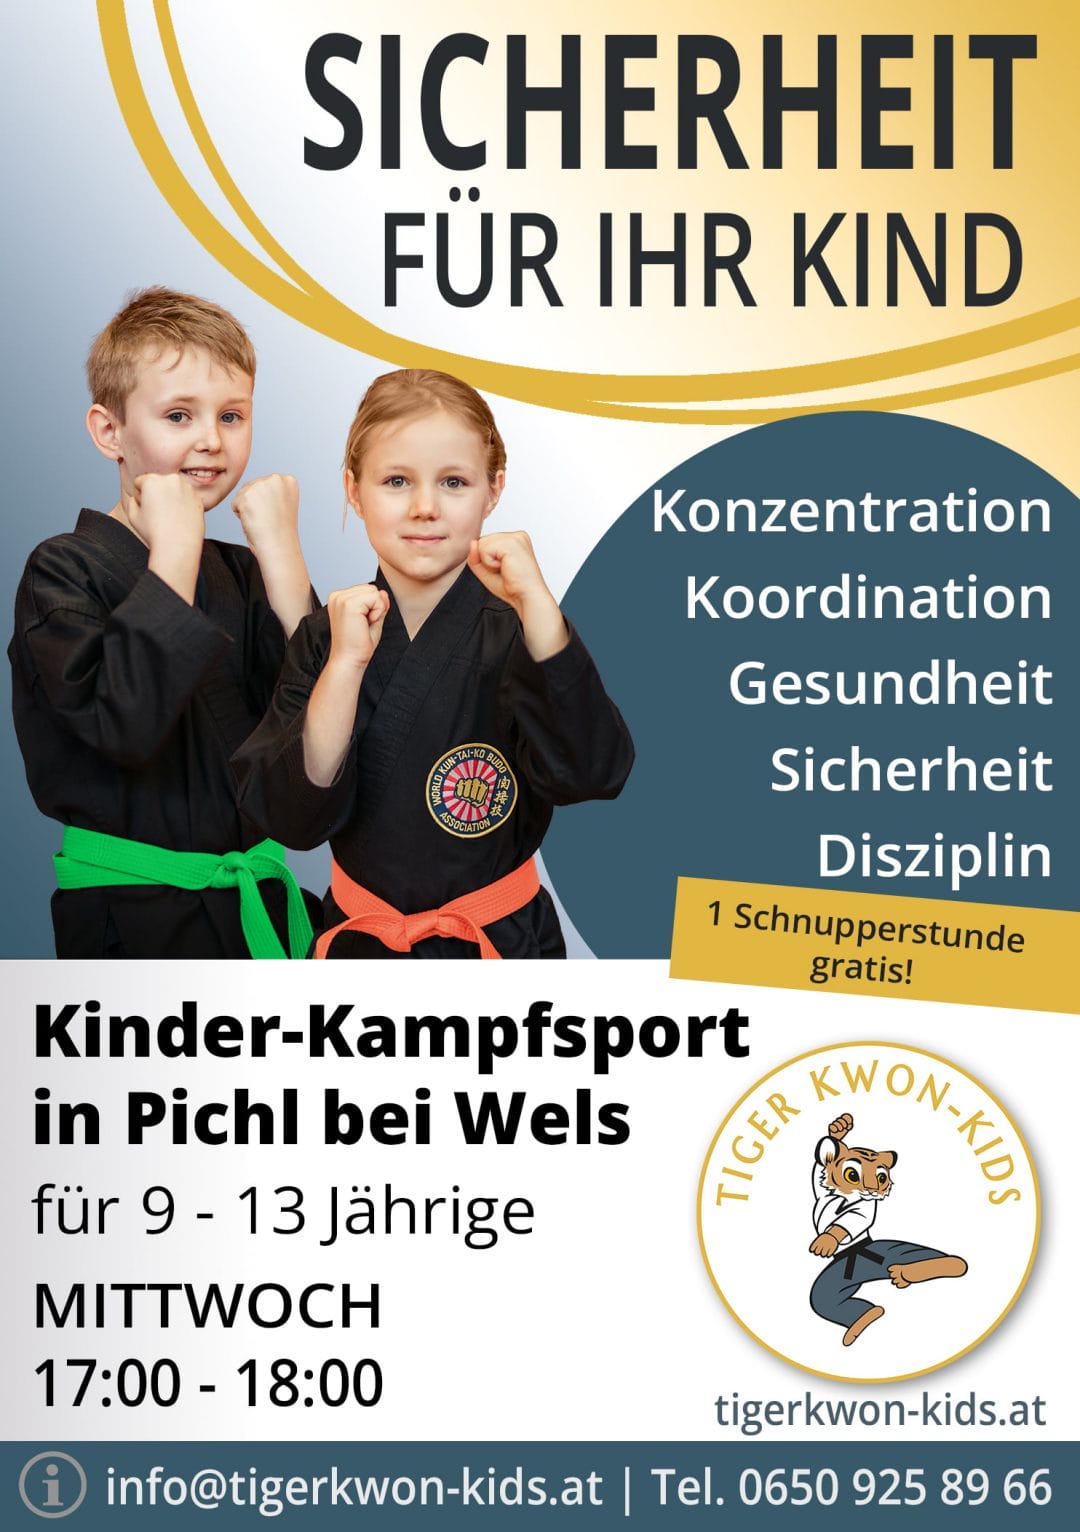 Flyer des Tiger Kwon - Kids Standorts in Pichl bei Wels mit Informationen zu Trainingsort und -zeit, illustriert durch fröhliche Jungen und Mädchen.